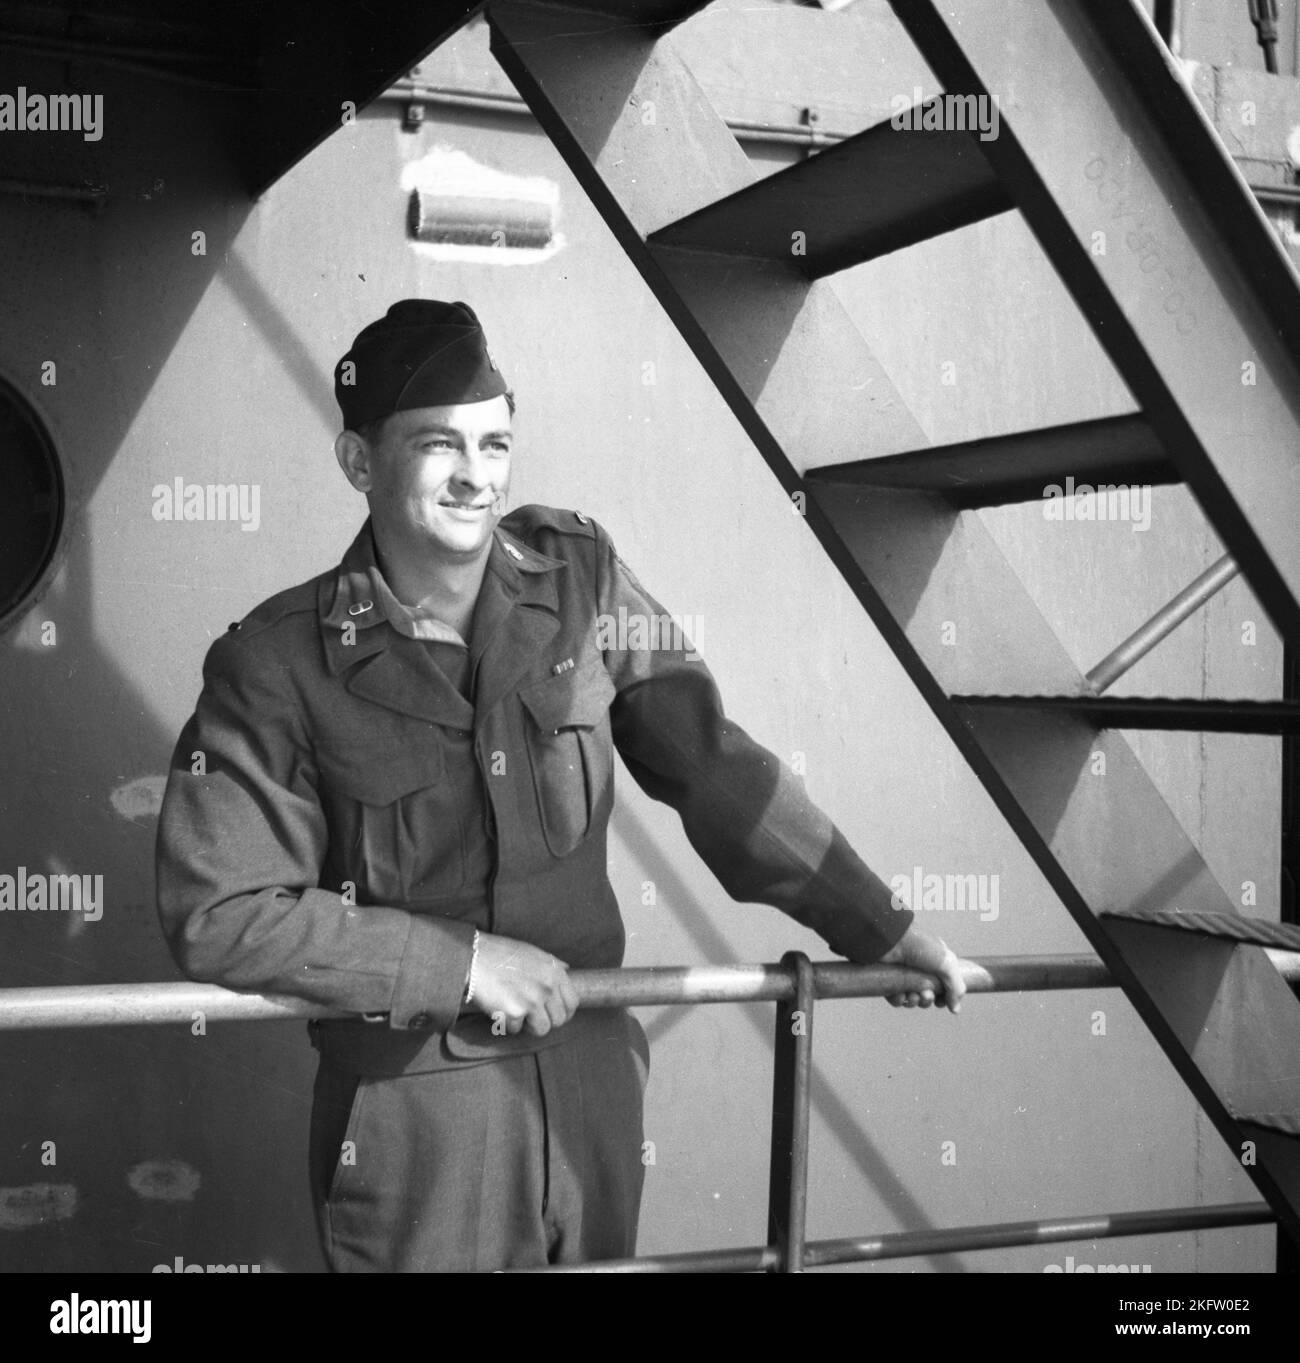 Porträt des Mannes in Uniform. Veteranen der United States Army kommen nach dem Zweiten Weltkrieg auf dem Elgin Victory Schiff nach Hause SS Elgin Victory, ein von Permanente Metals gebautes Schiff vom Typ VC2-S-AP2 Victory Stockfoto